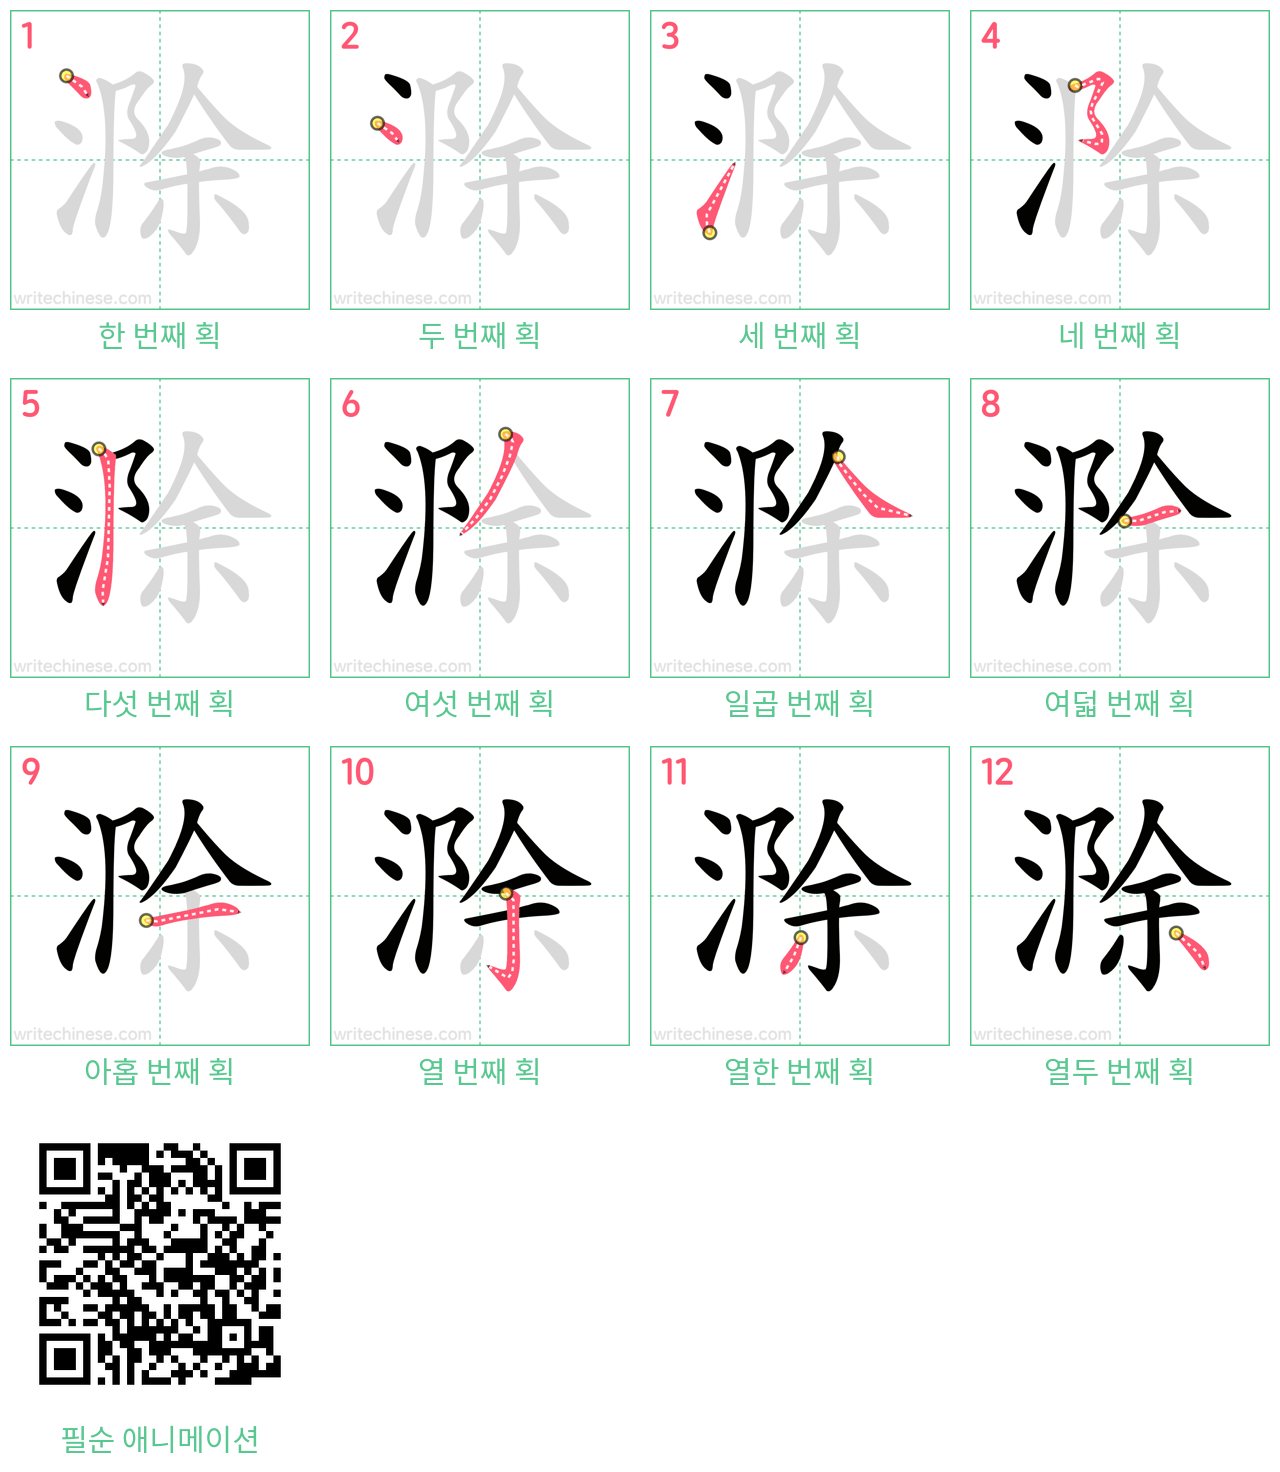 滁 step-by-step stroke order diagrams